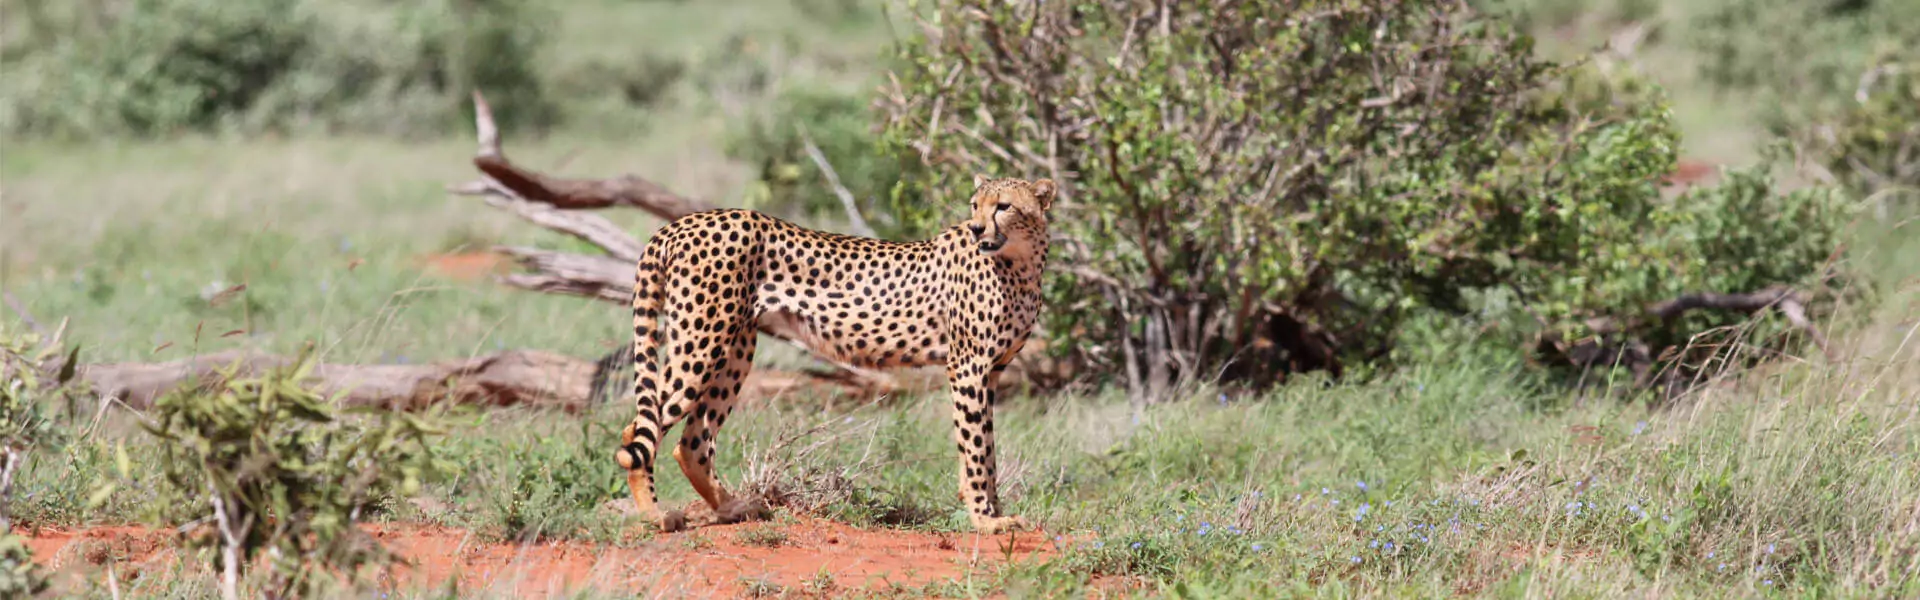 Kenia Safari Nationalpark Gepard in Natur